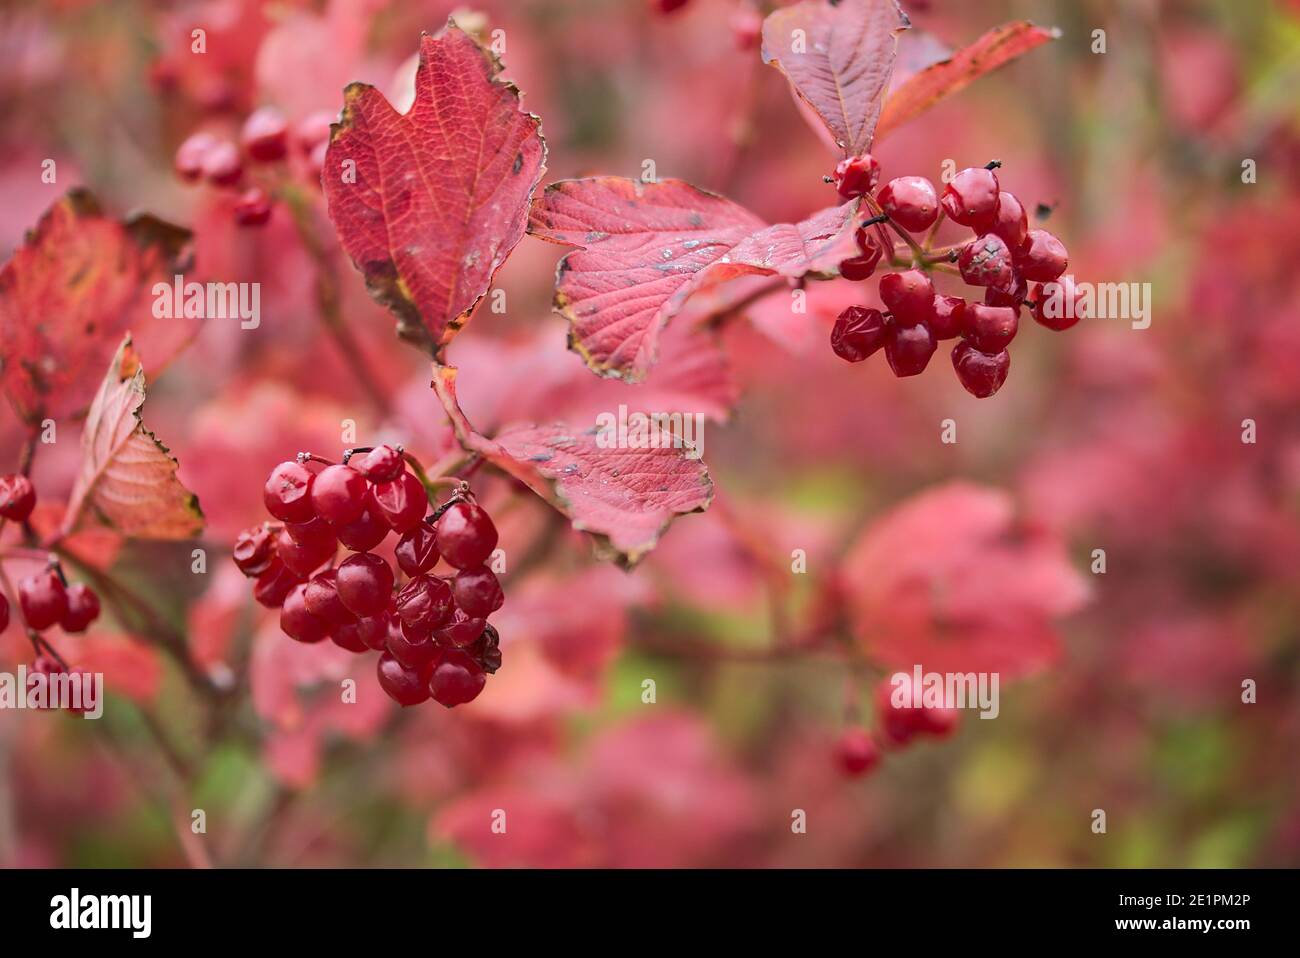 Superbe fond d'automne rouge de Viburnum avec baies et feuilles mûres rouges, Dublin, Irlande. Mise au point douce et sélective. Médecine alternative Banque D'Images